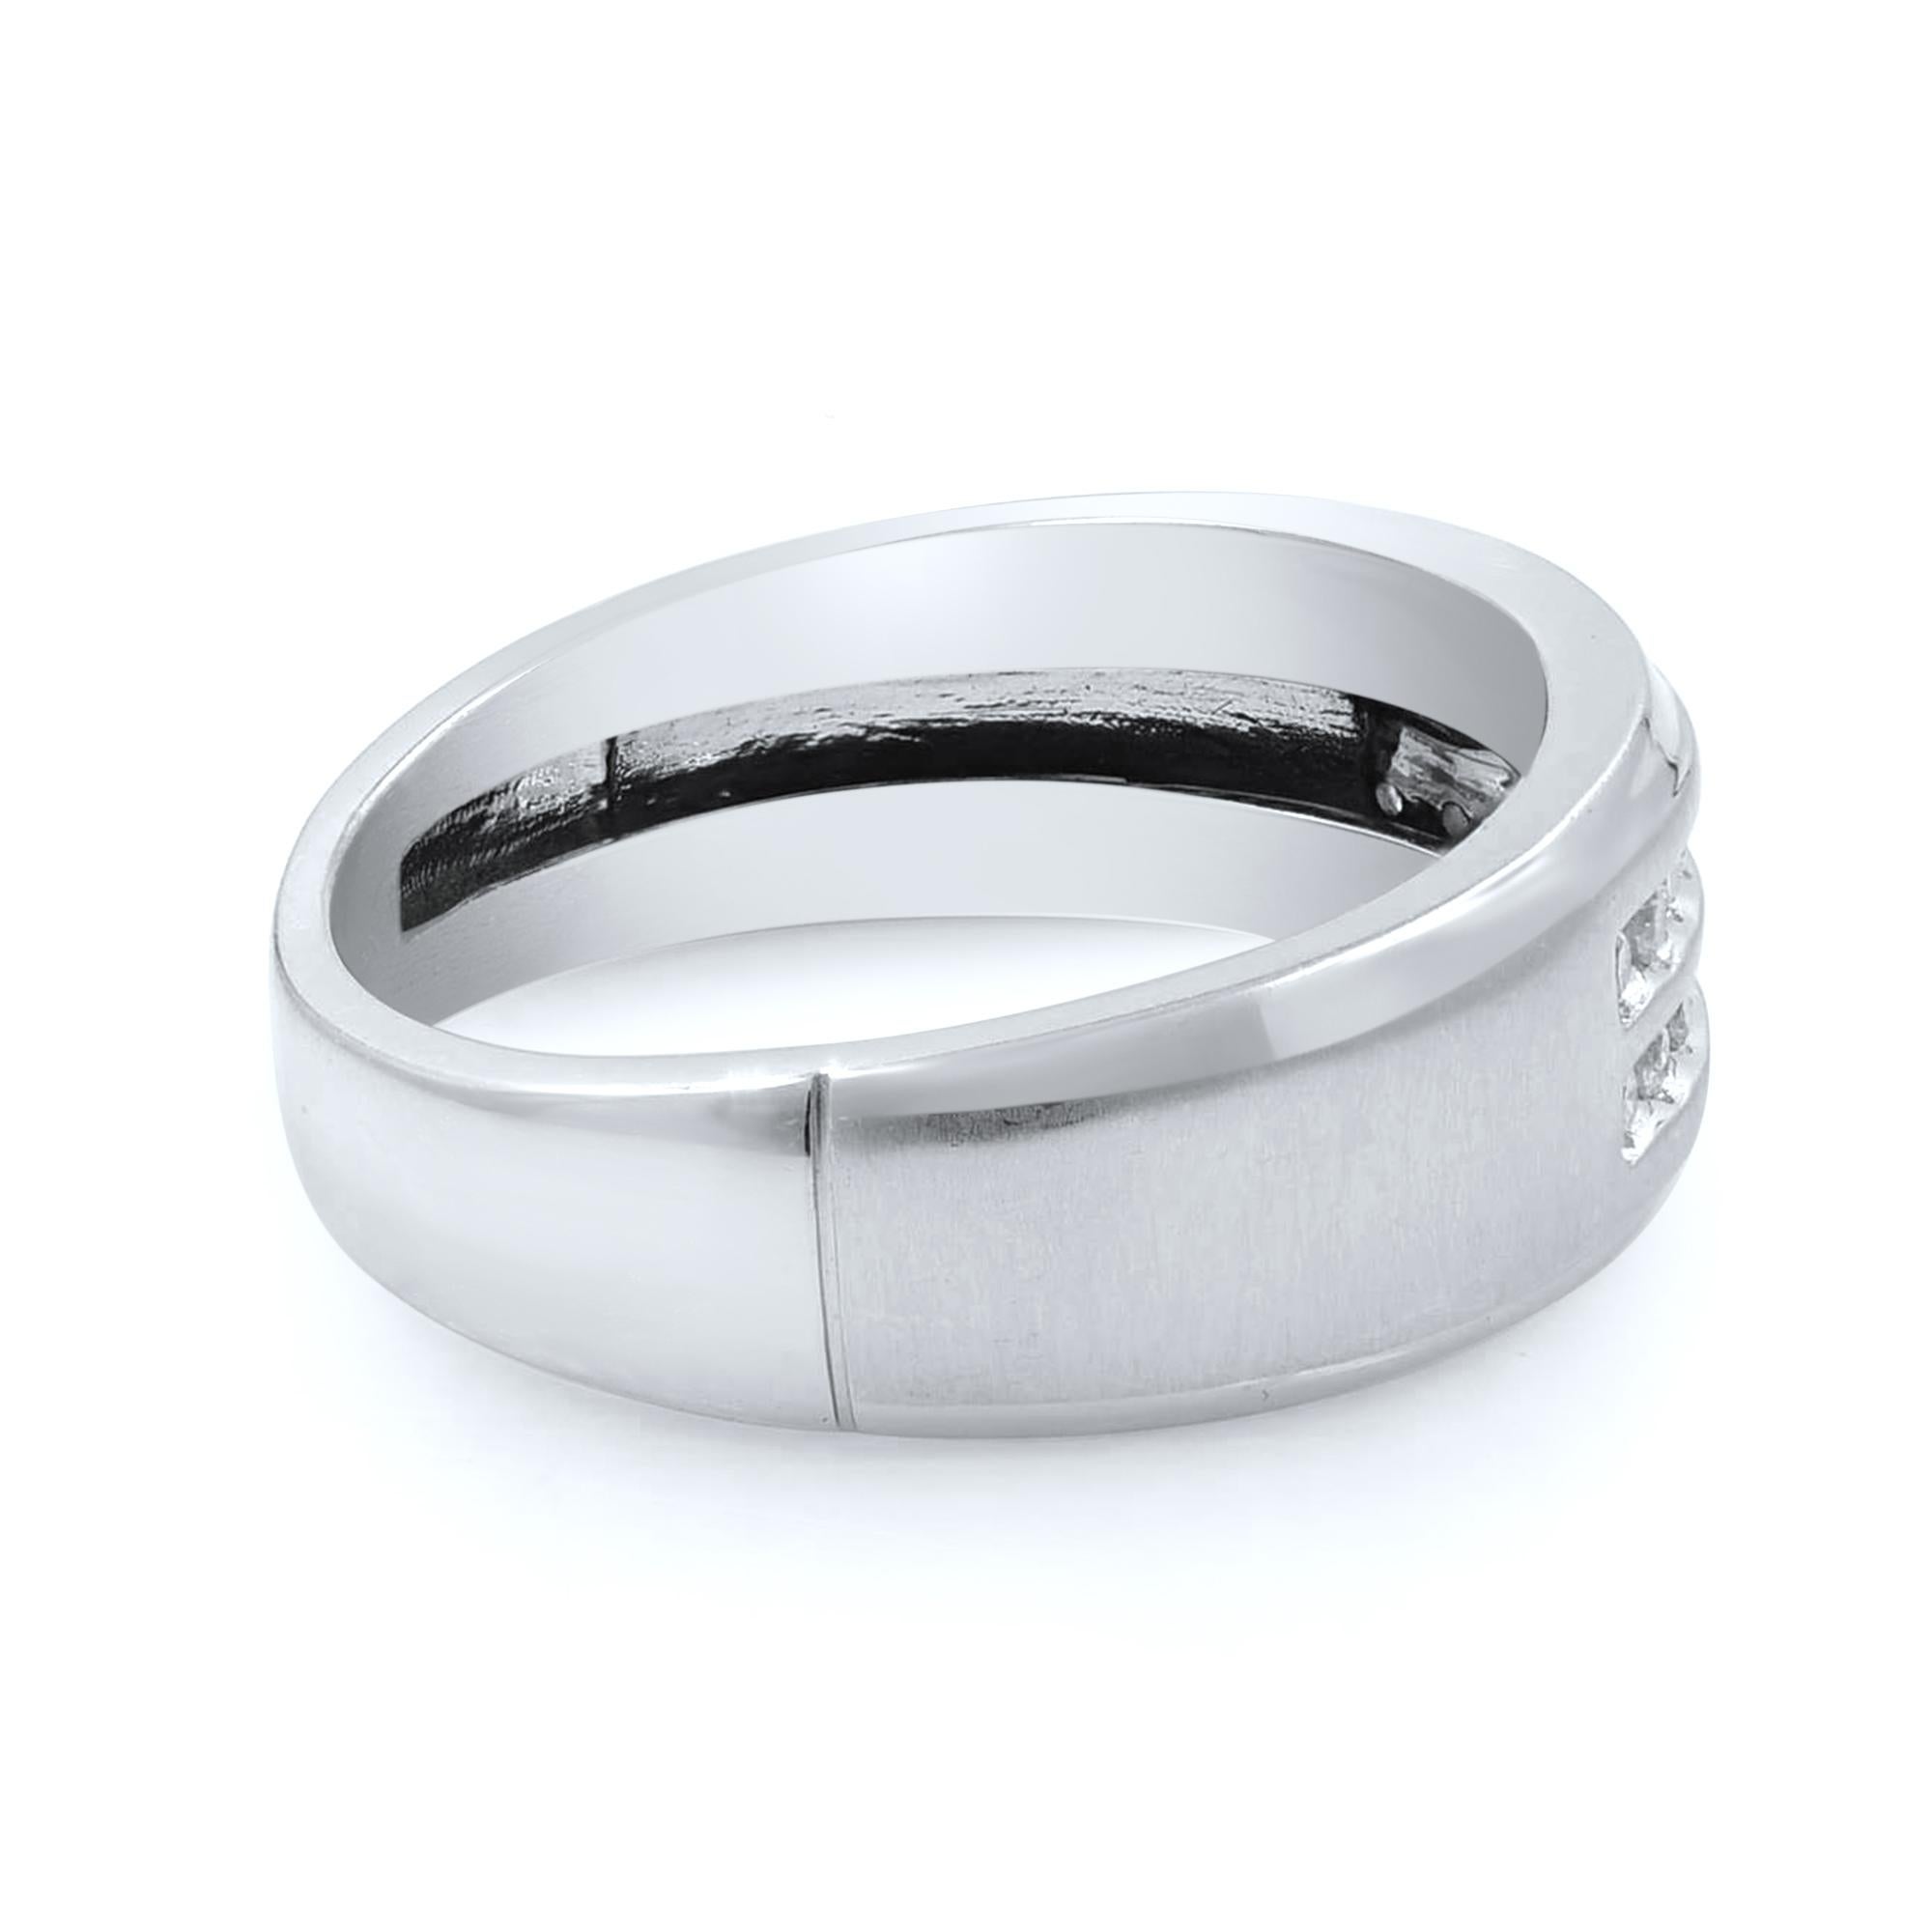 Women's 10 Karat White Gold Round Cut Diamond Wedding Band Ring for Men 0.36 Carat